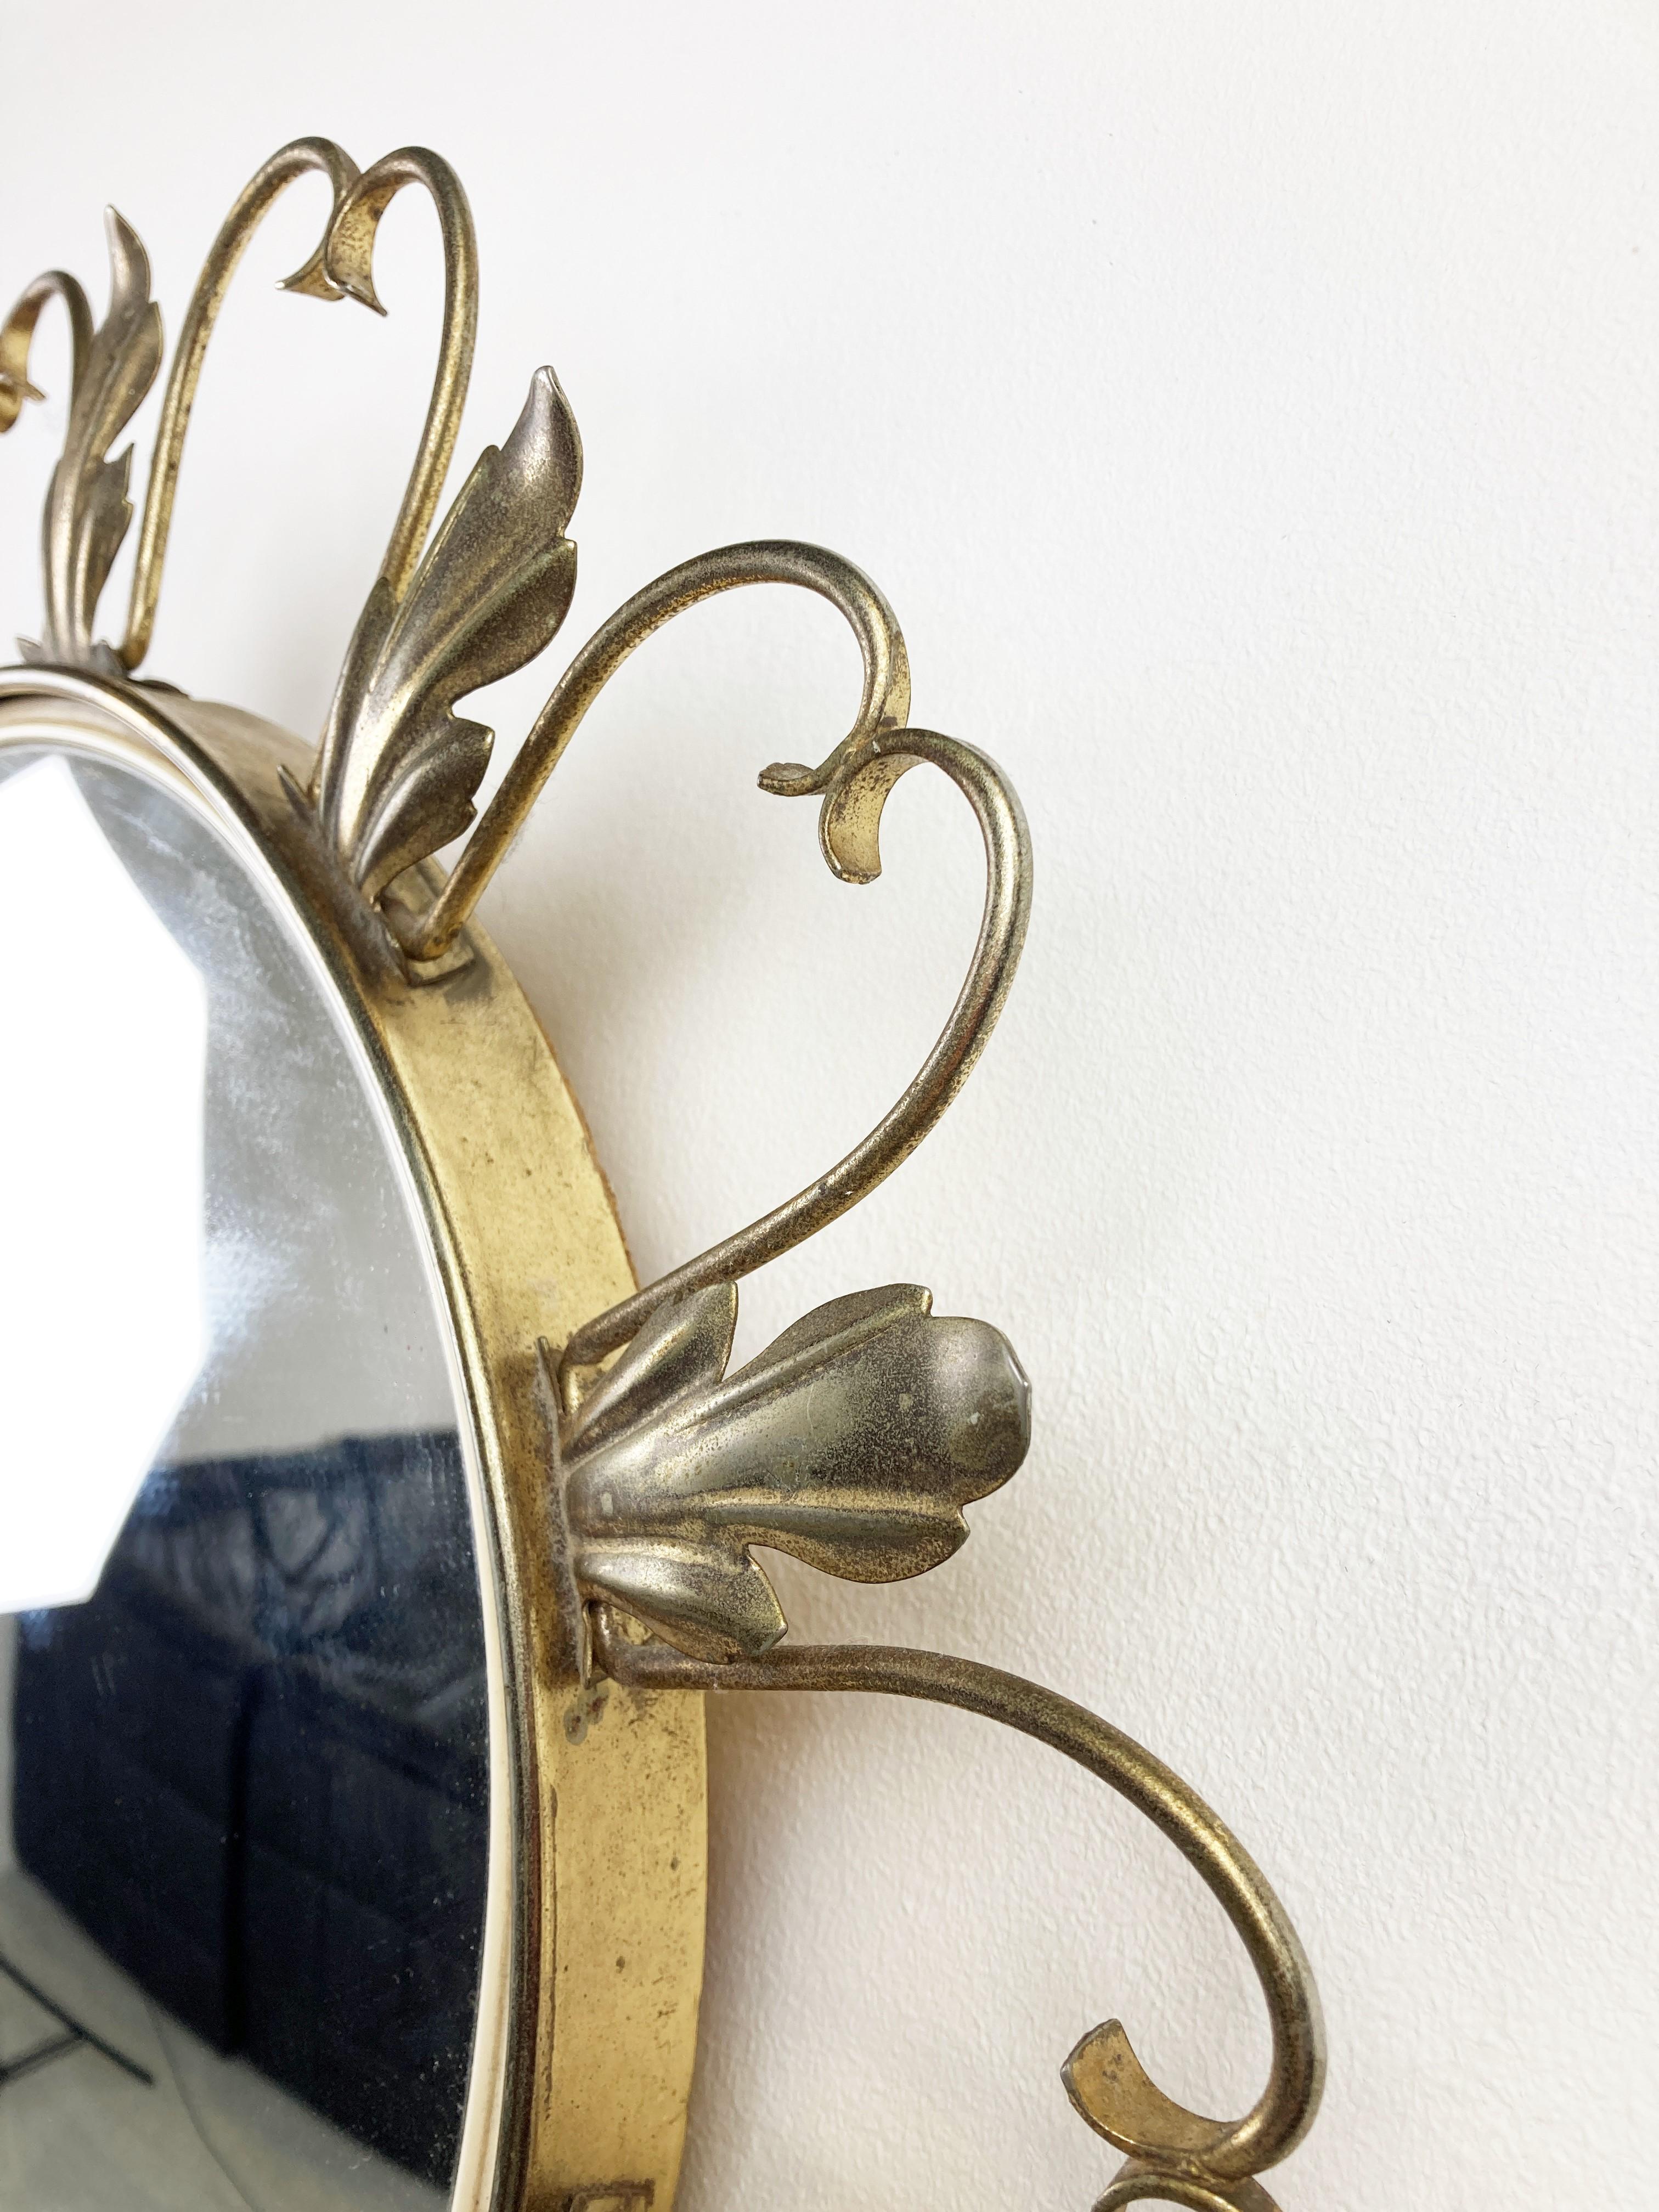 Miroir en laiton du milieu du siècle avec verre convexe.

Ce miroir s'adapte à la plupart des intérieurs et constitue un complément parfait pour un intérieur de style régence.

Bon état.

France - années 1970

Diamètre : 46cm/18.11'

Réf : 2/43